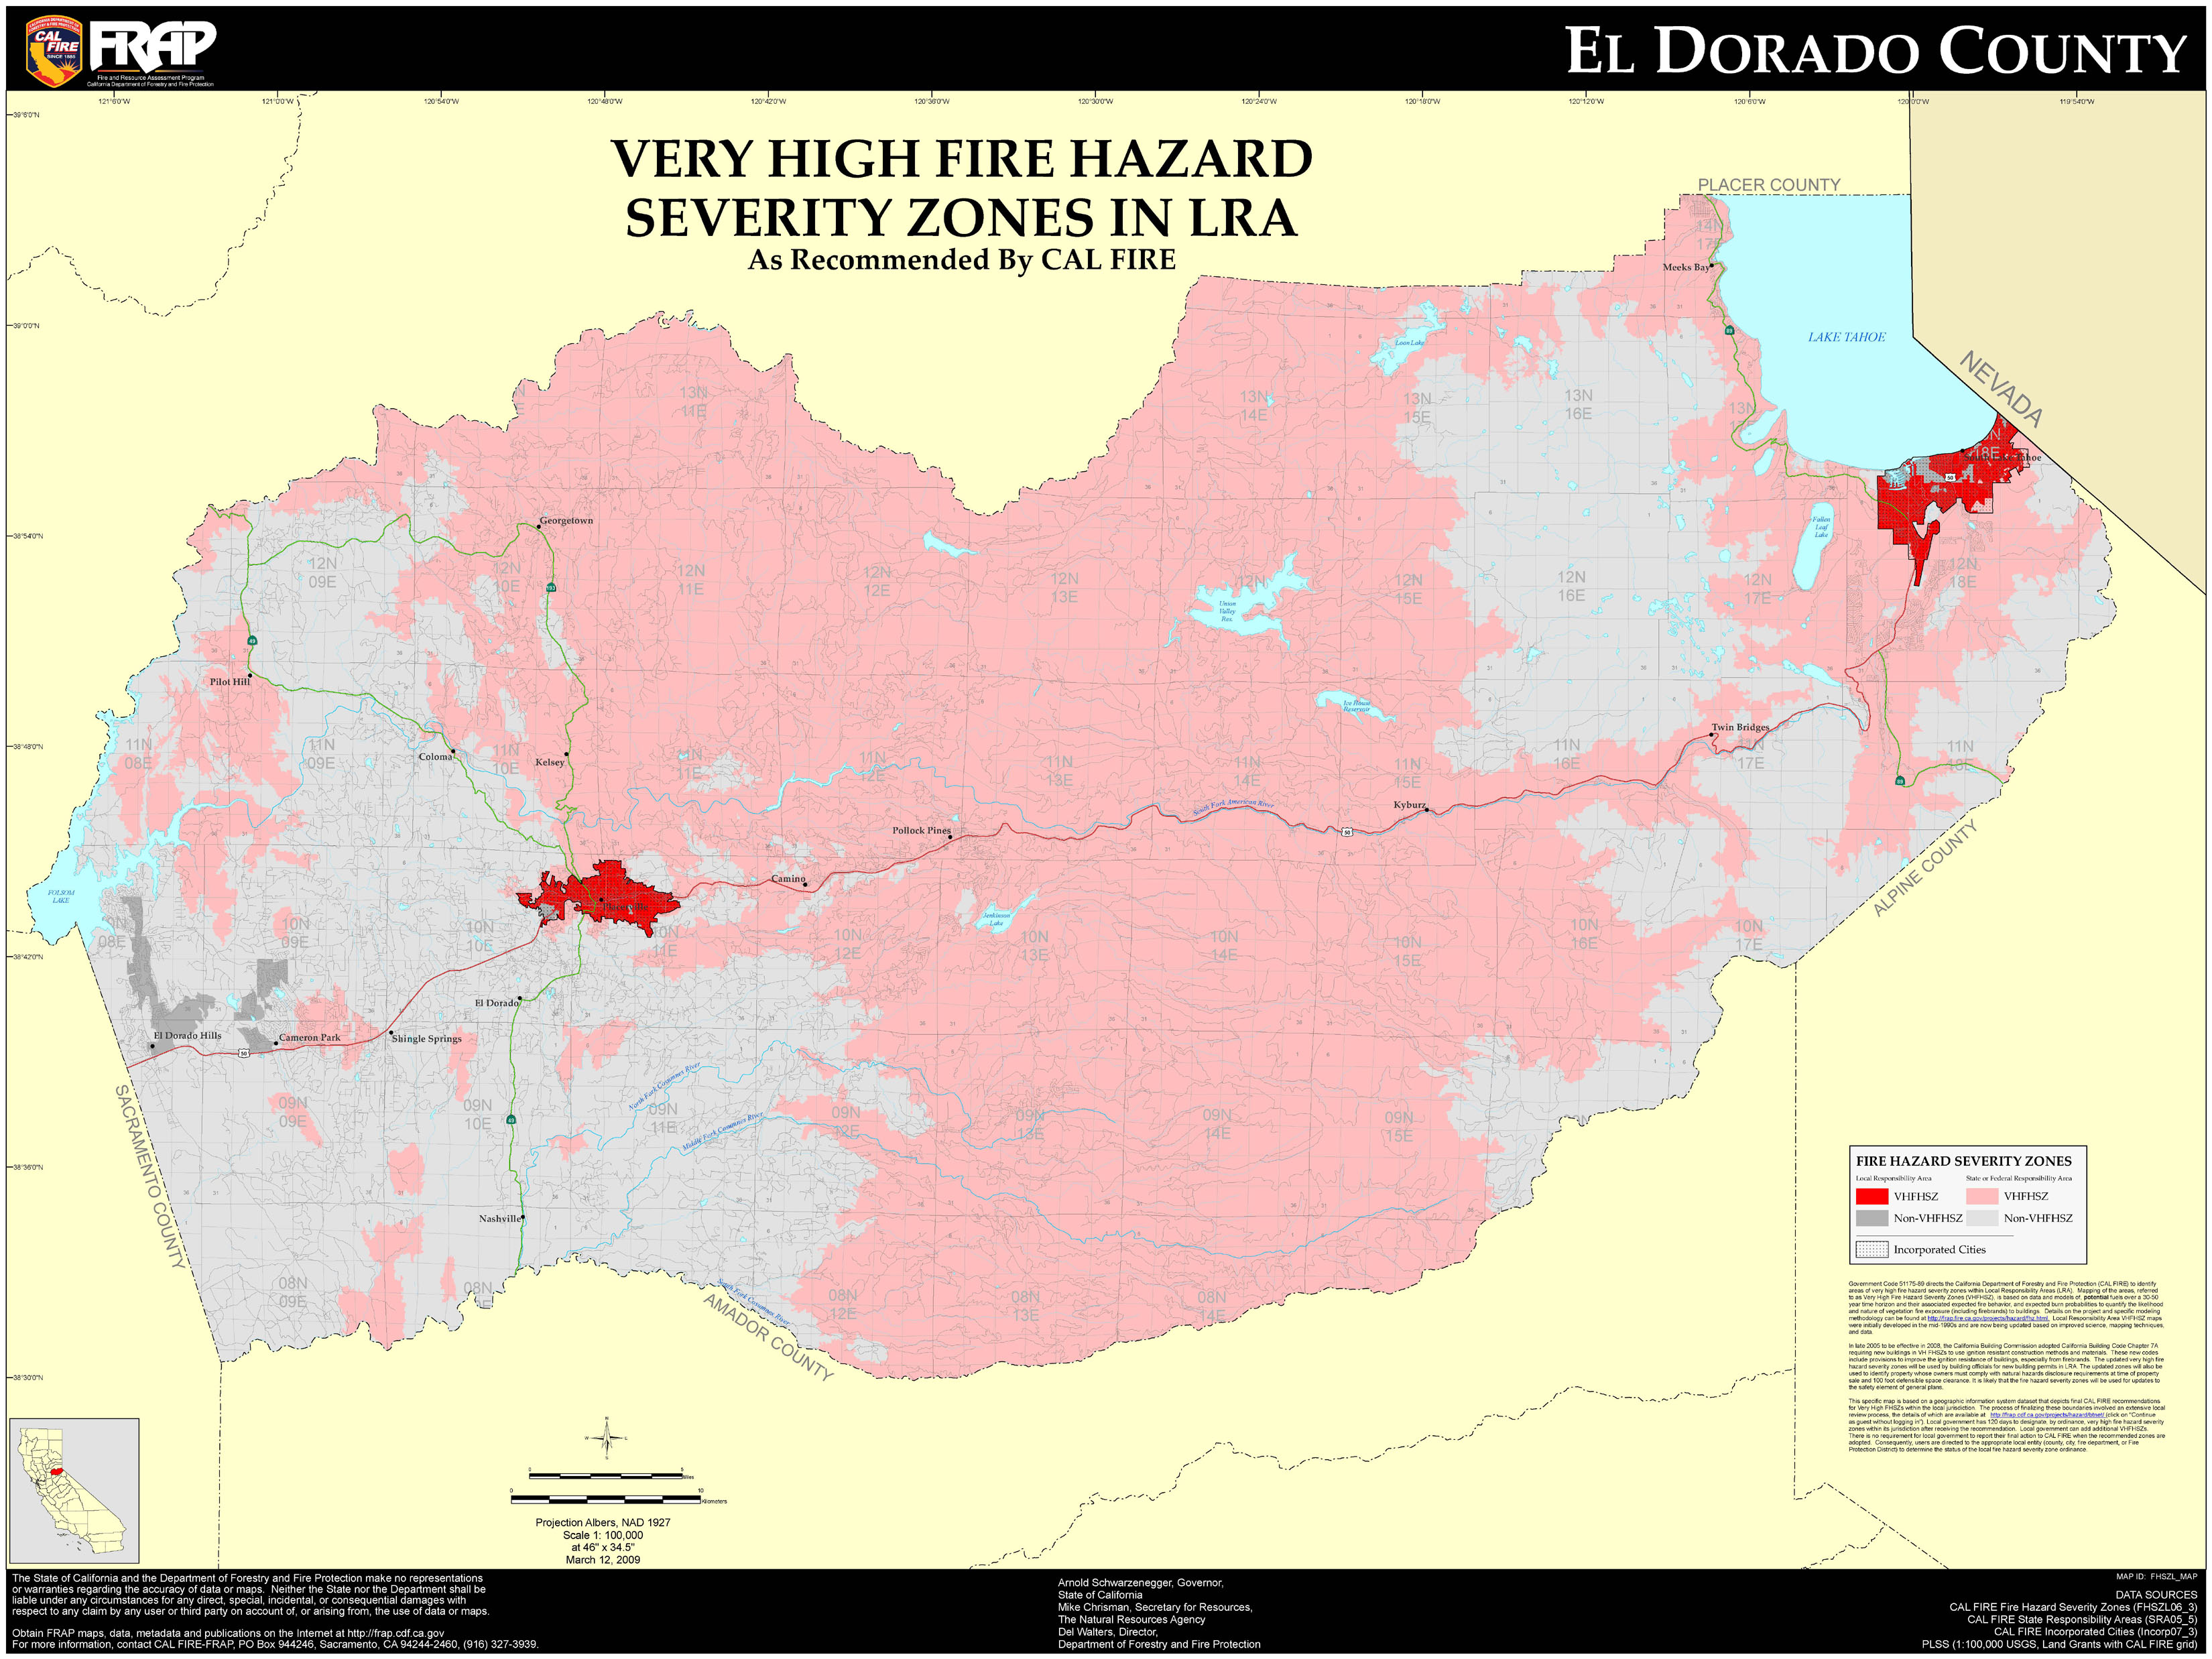 el dorado county map El Dorado County Very High Fire Hazard Severity Zones In Lra el dorado county map